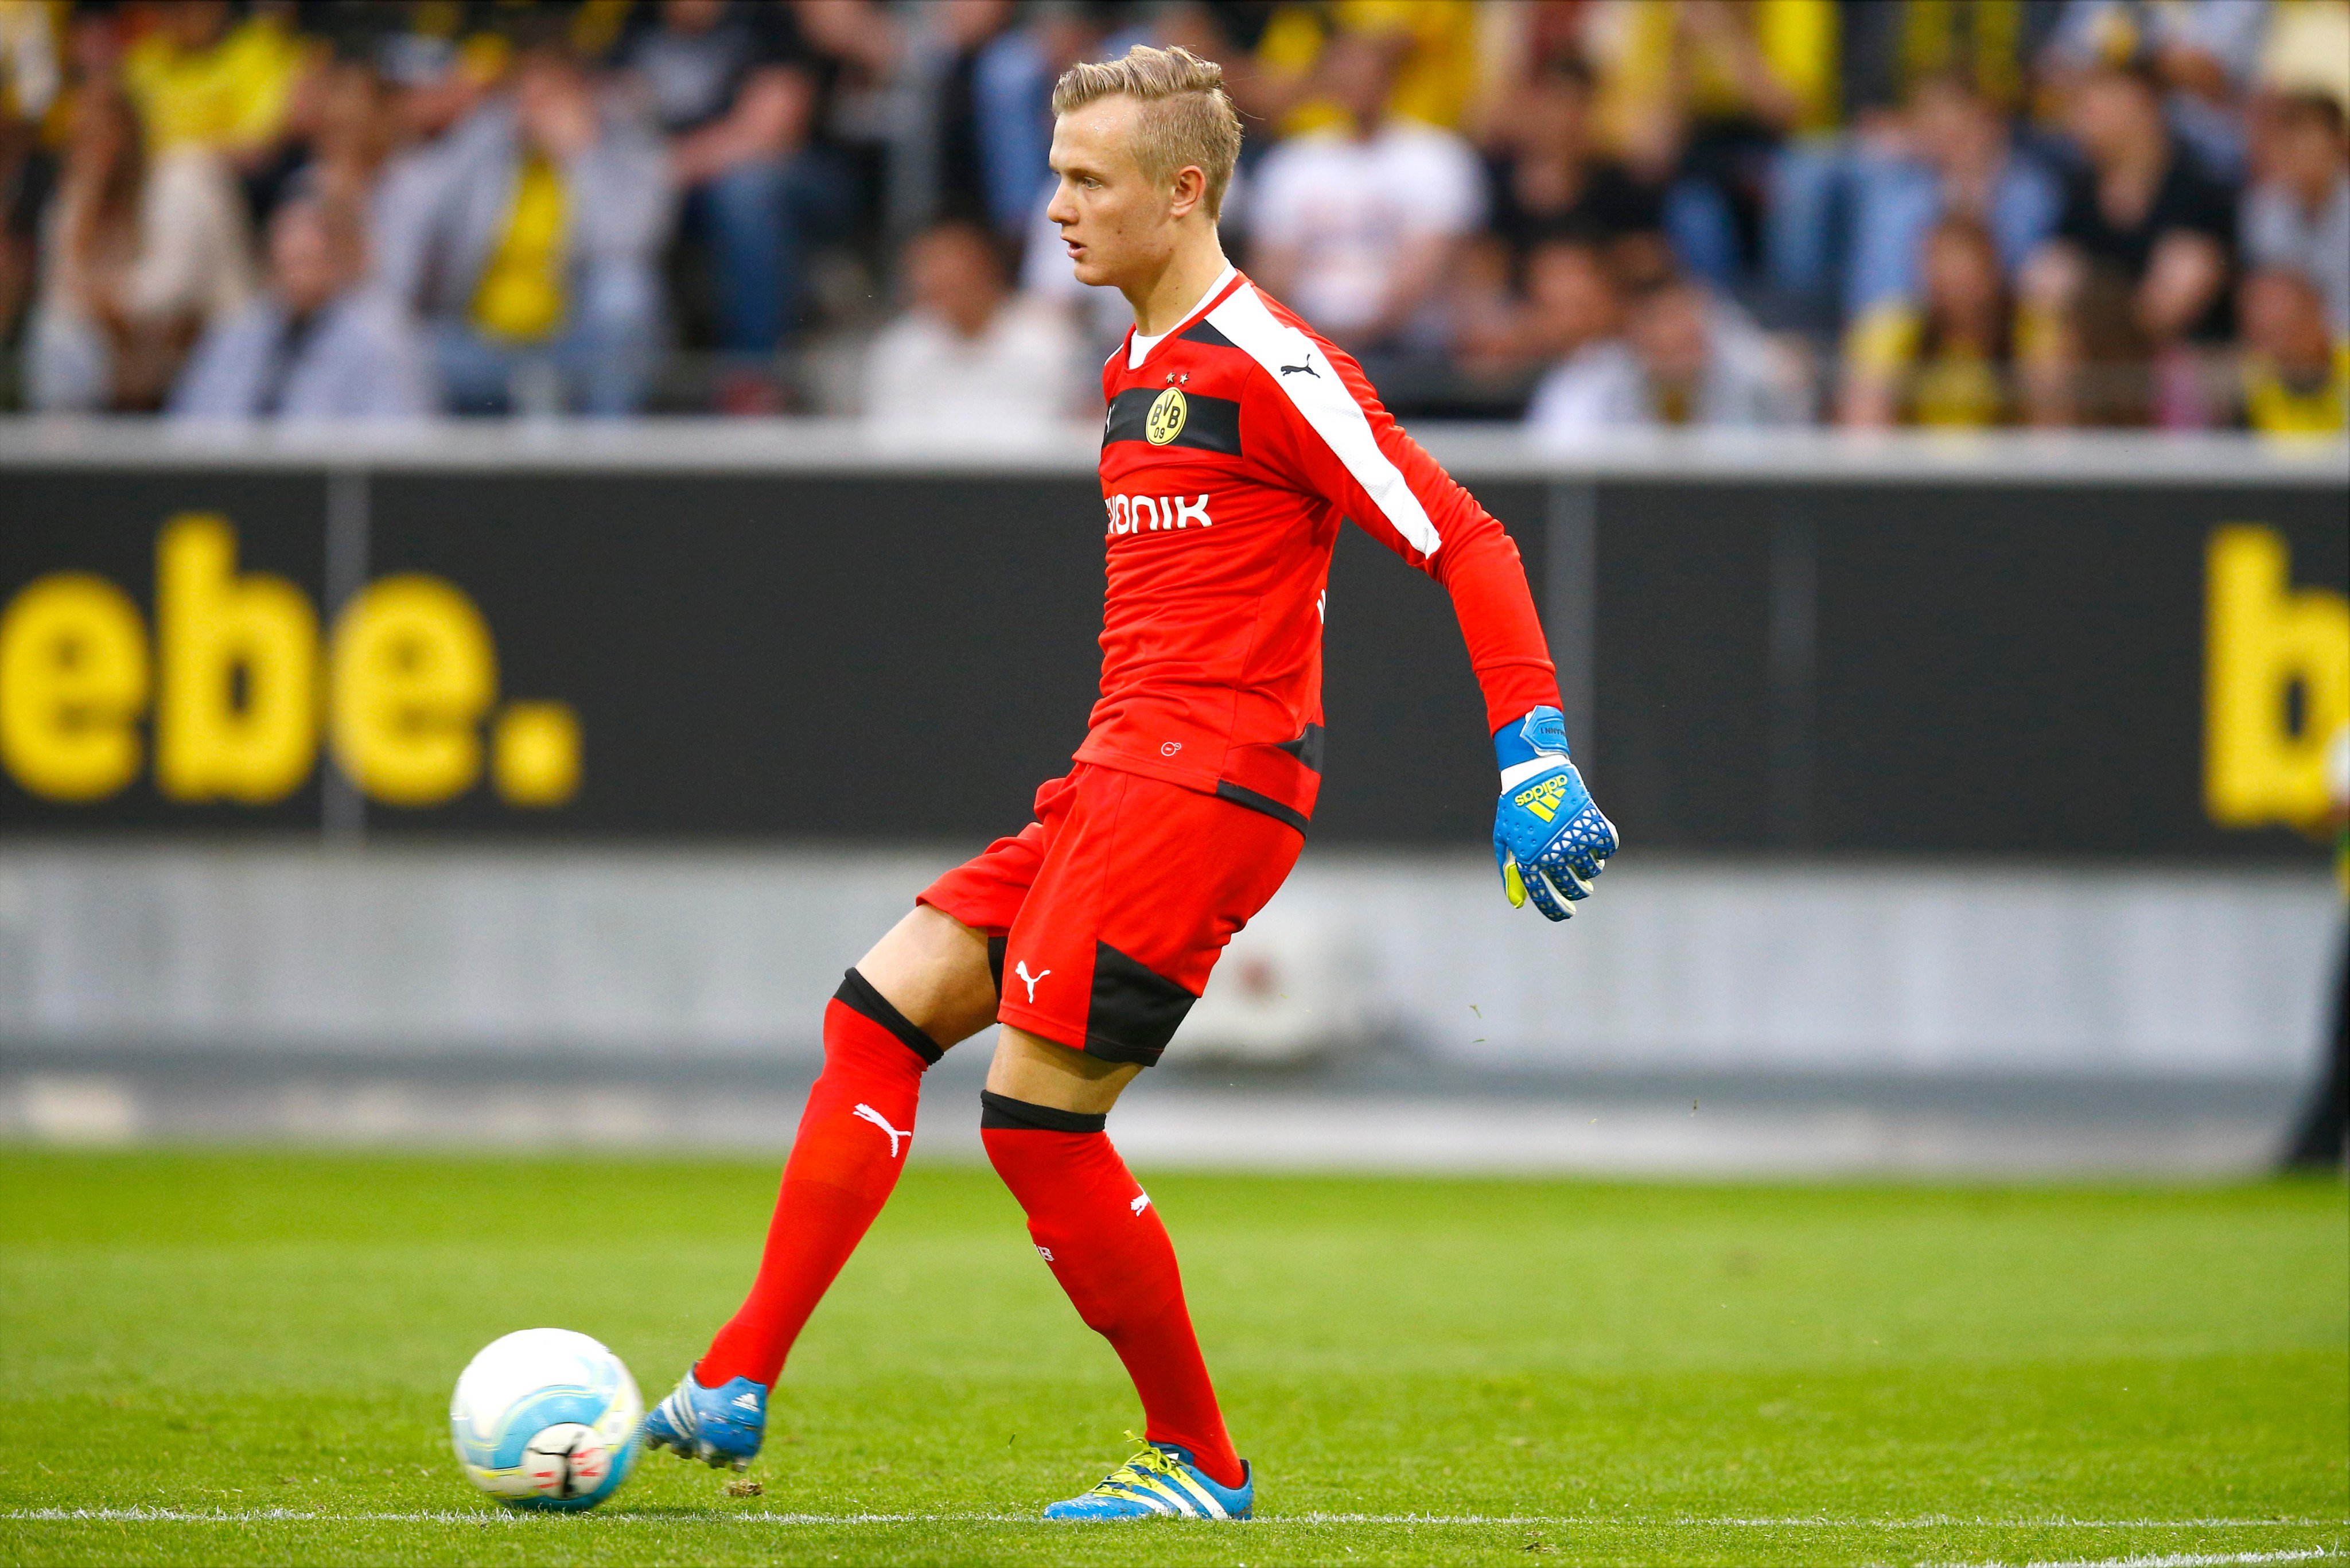 48º - Luca Unbehaun - Com passagem pelas categorias de base do Bochum, Luca Unbehaun foi contratado pelo Borussia Dortmund em 2016, com apenas 15 anos de idade. Hoje, é considerado uma das grandes promessas no gol alemão.